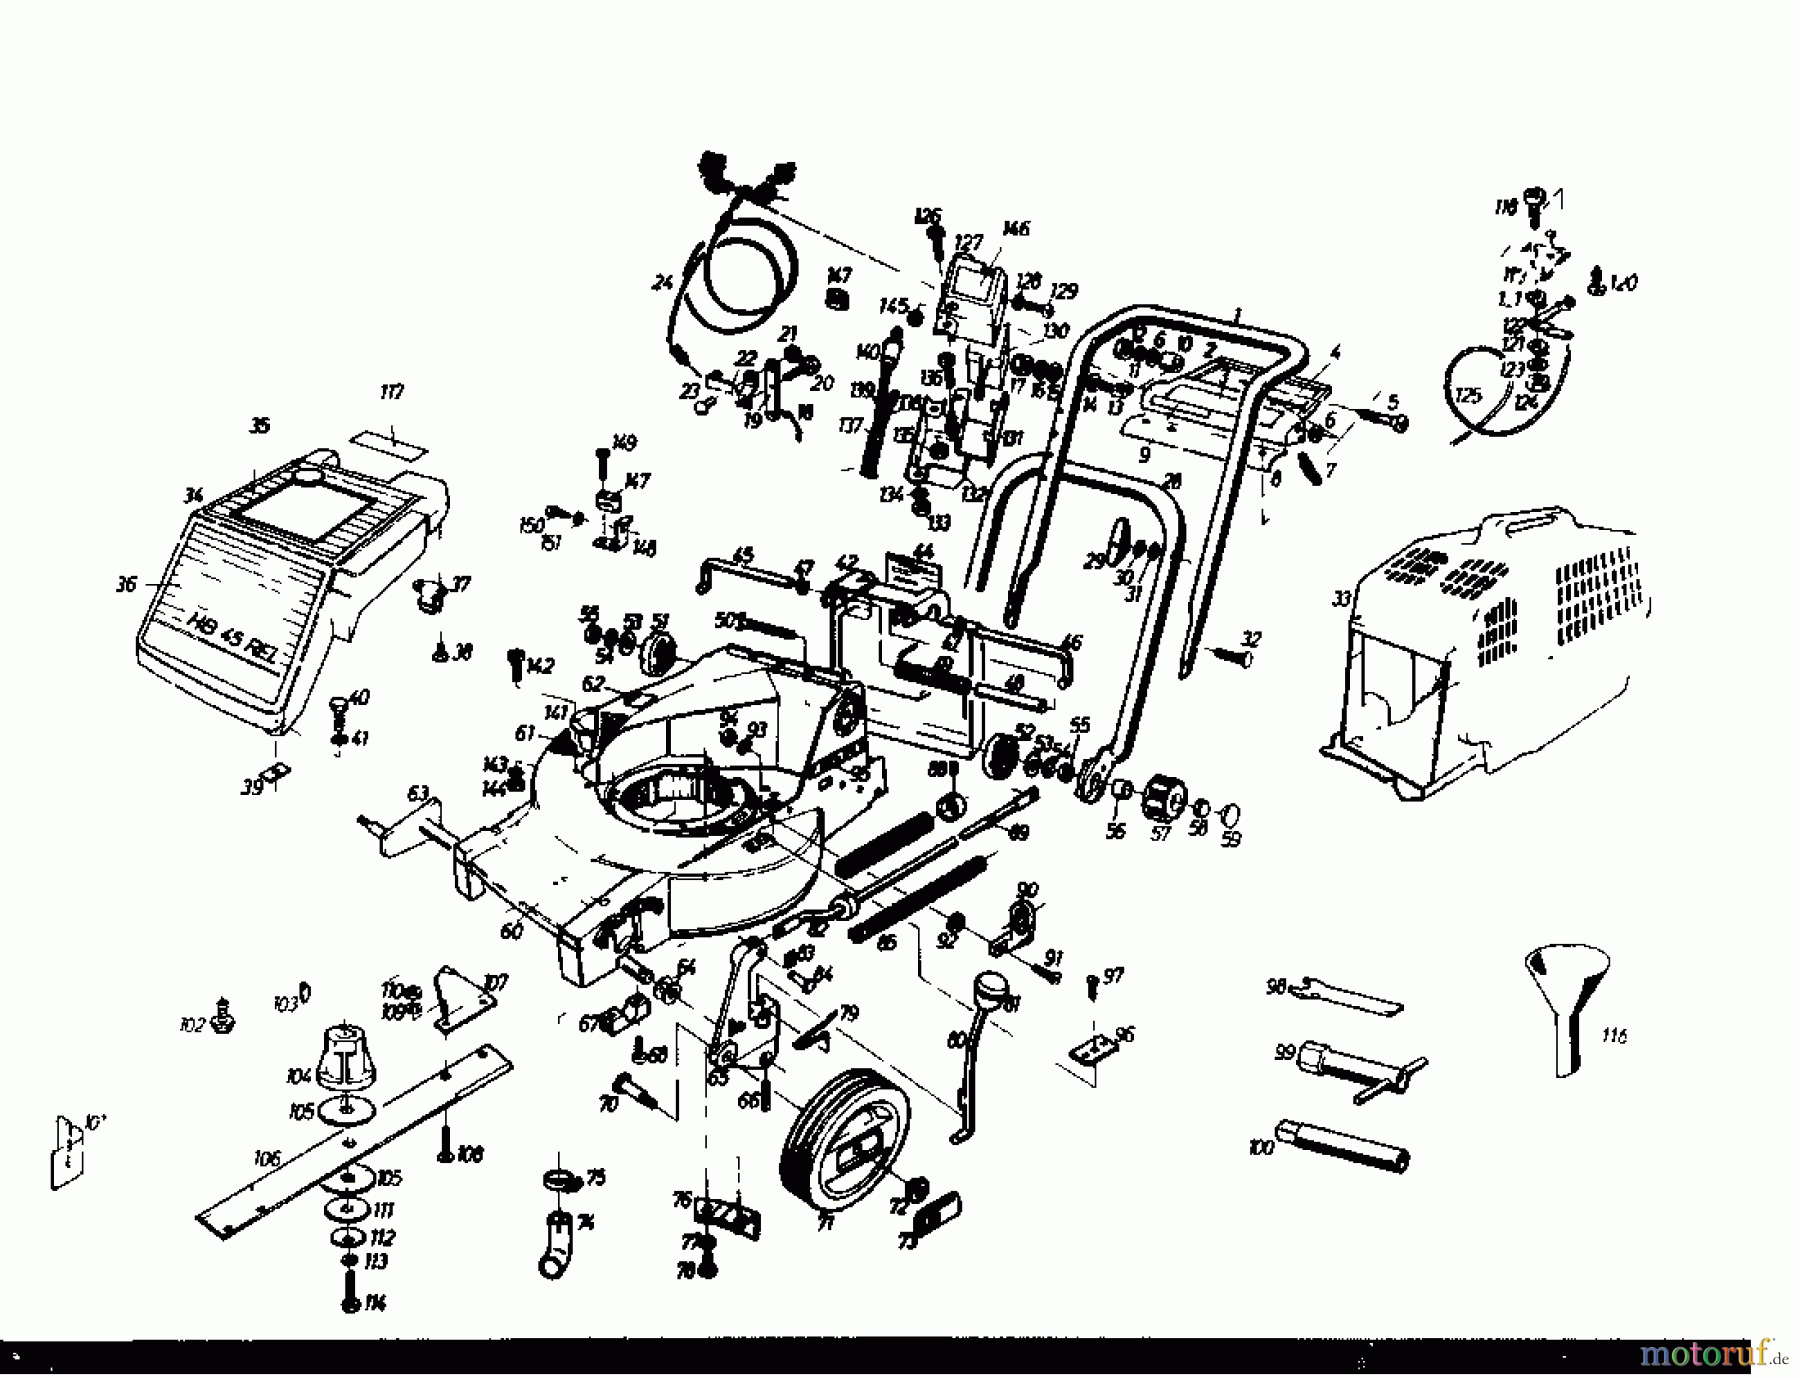  Gutbrod Tondeuse thermique tractée HB 45 REL 02885.01  (1985) Machine de base